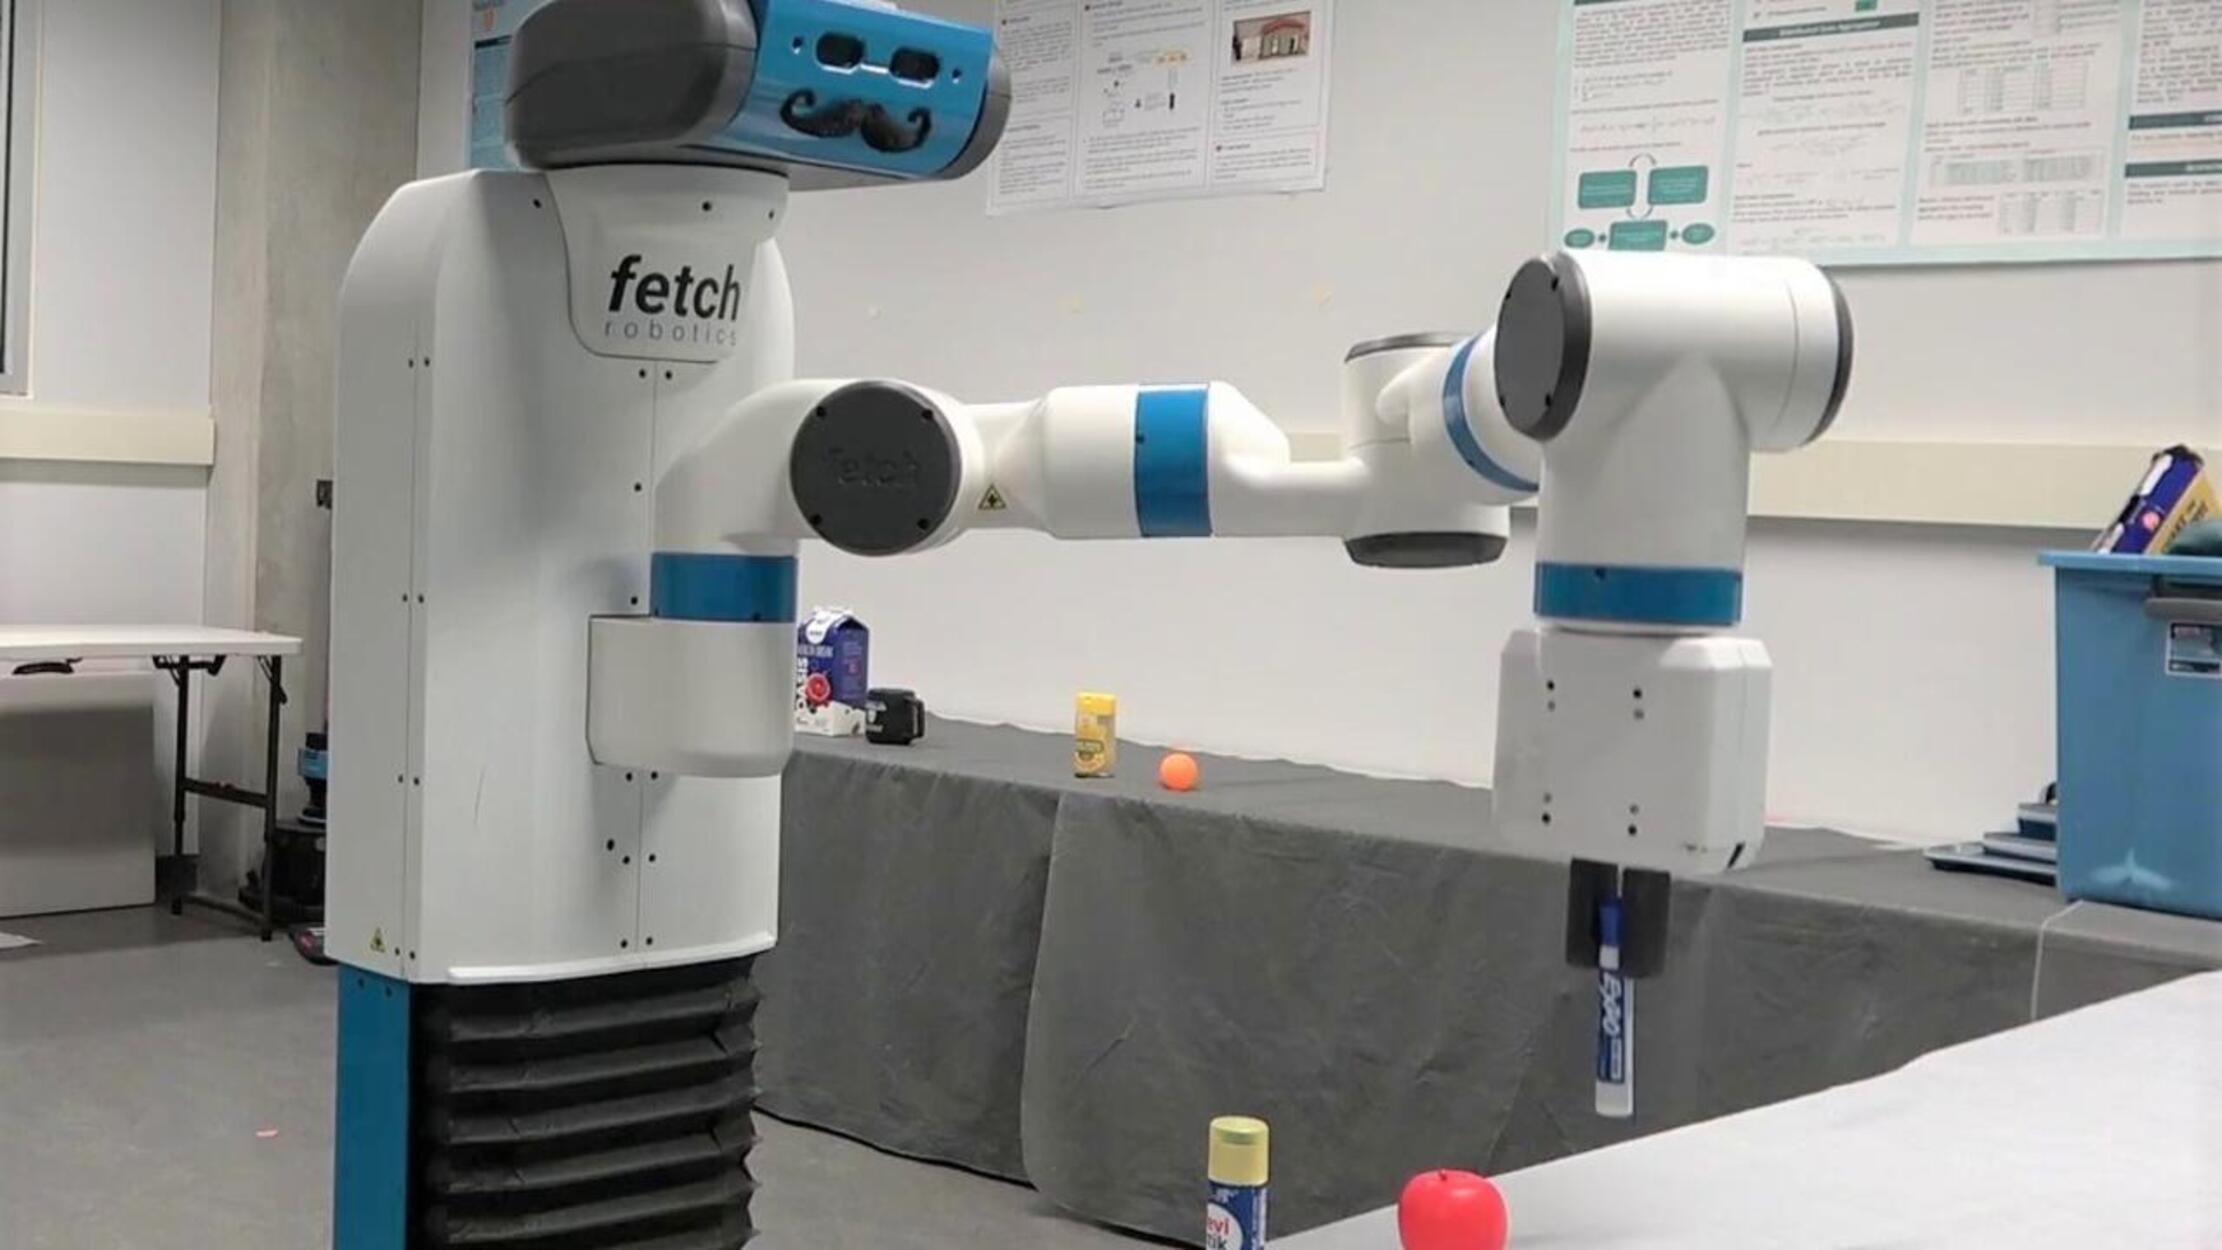 Crean un robot para ayudar a las personas con demencia a encontrar sus objetos perdidos